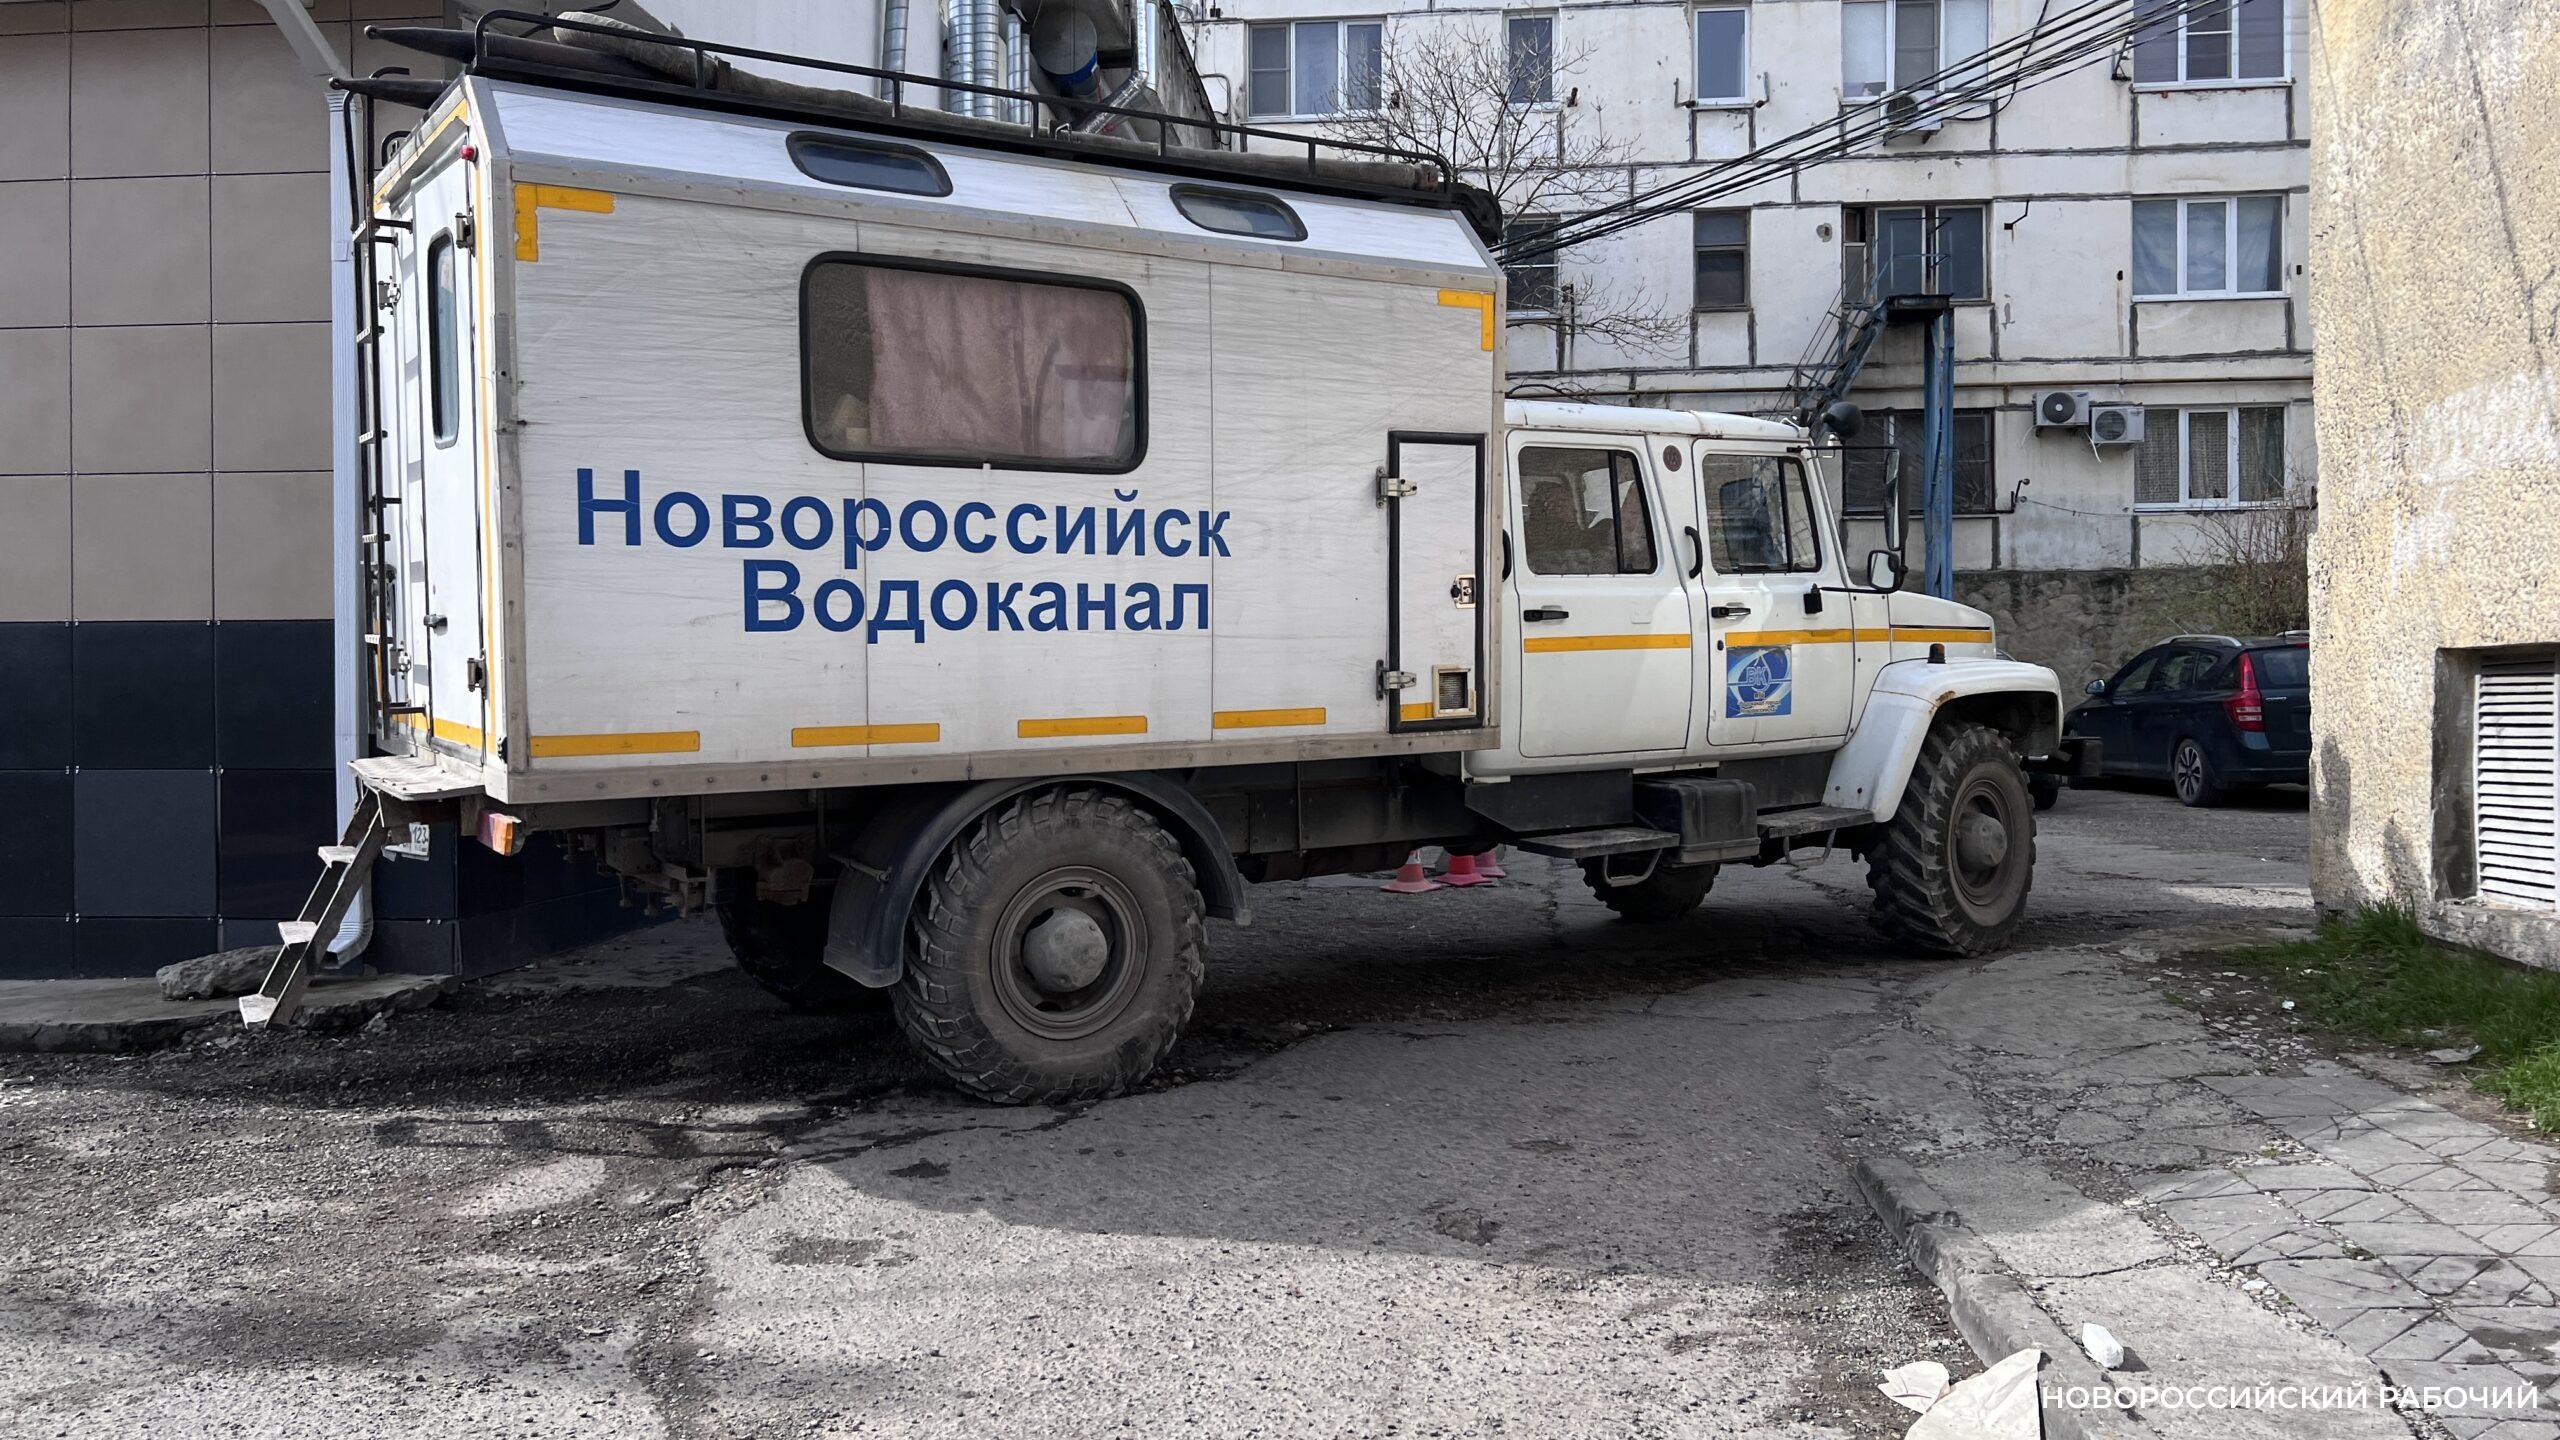 В Новороссийске коммунальщики взялись за утечки. Гололеда на дорогах станет меньше?